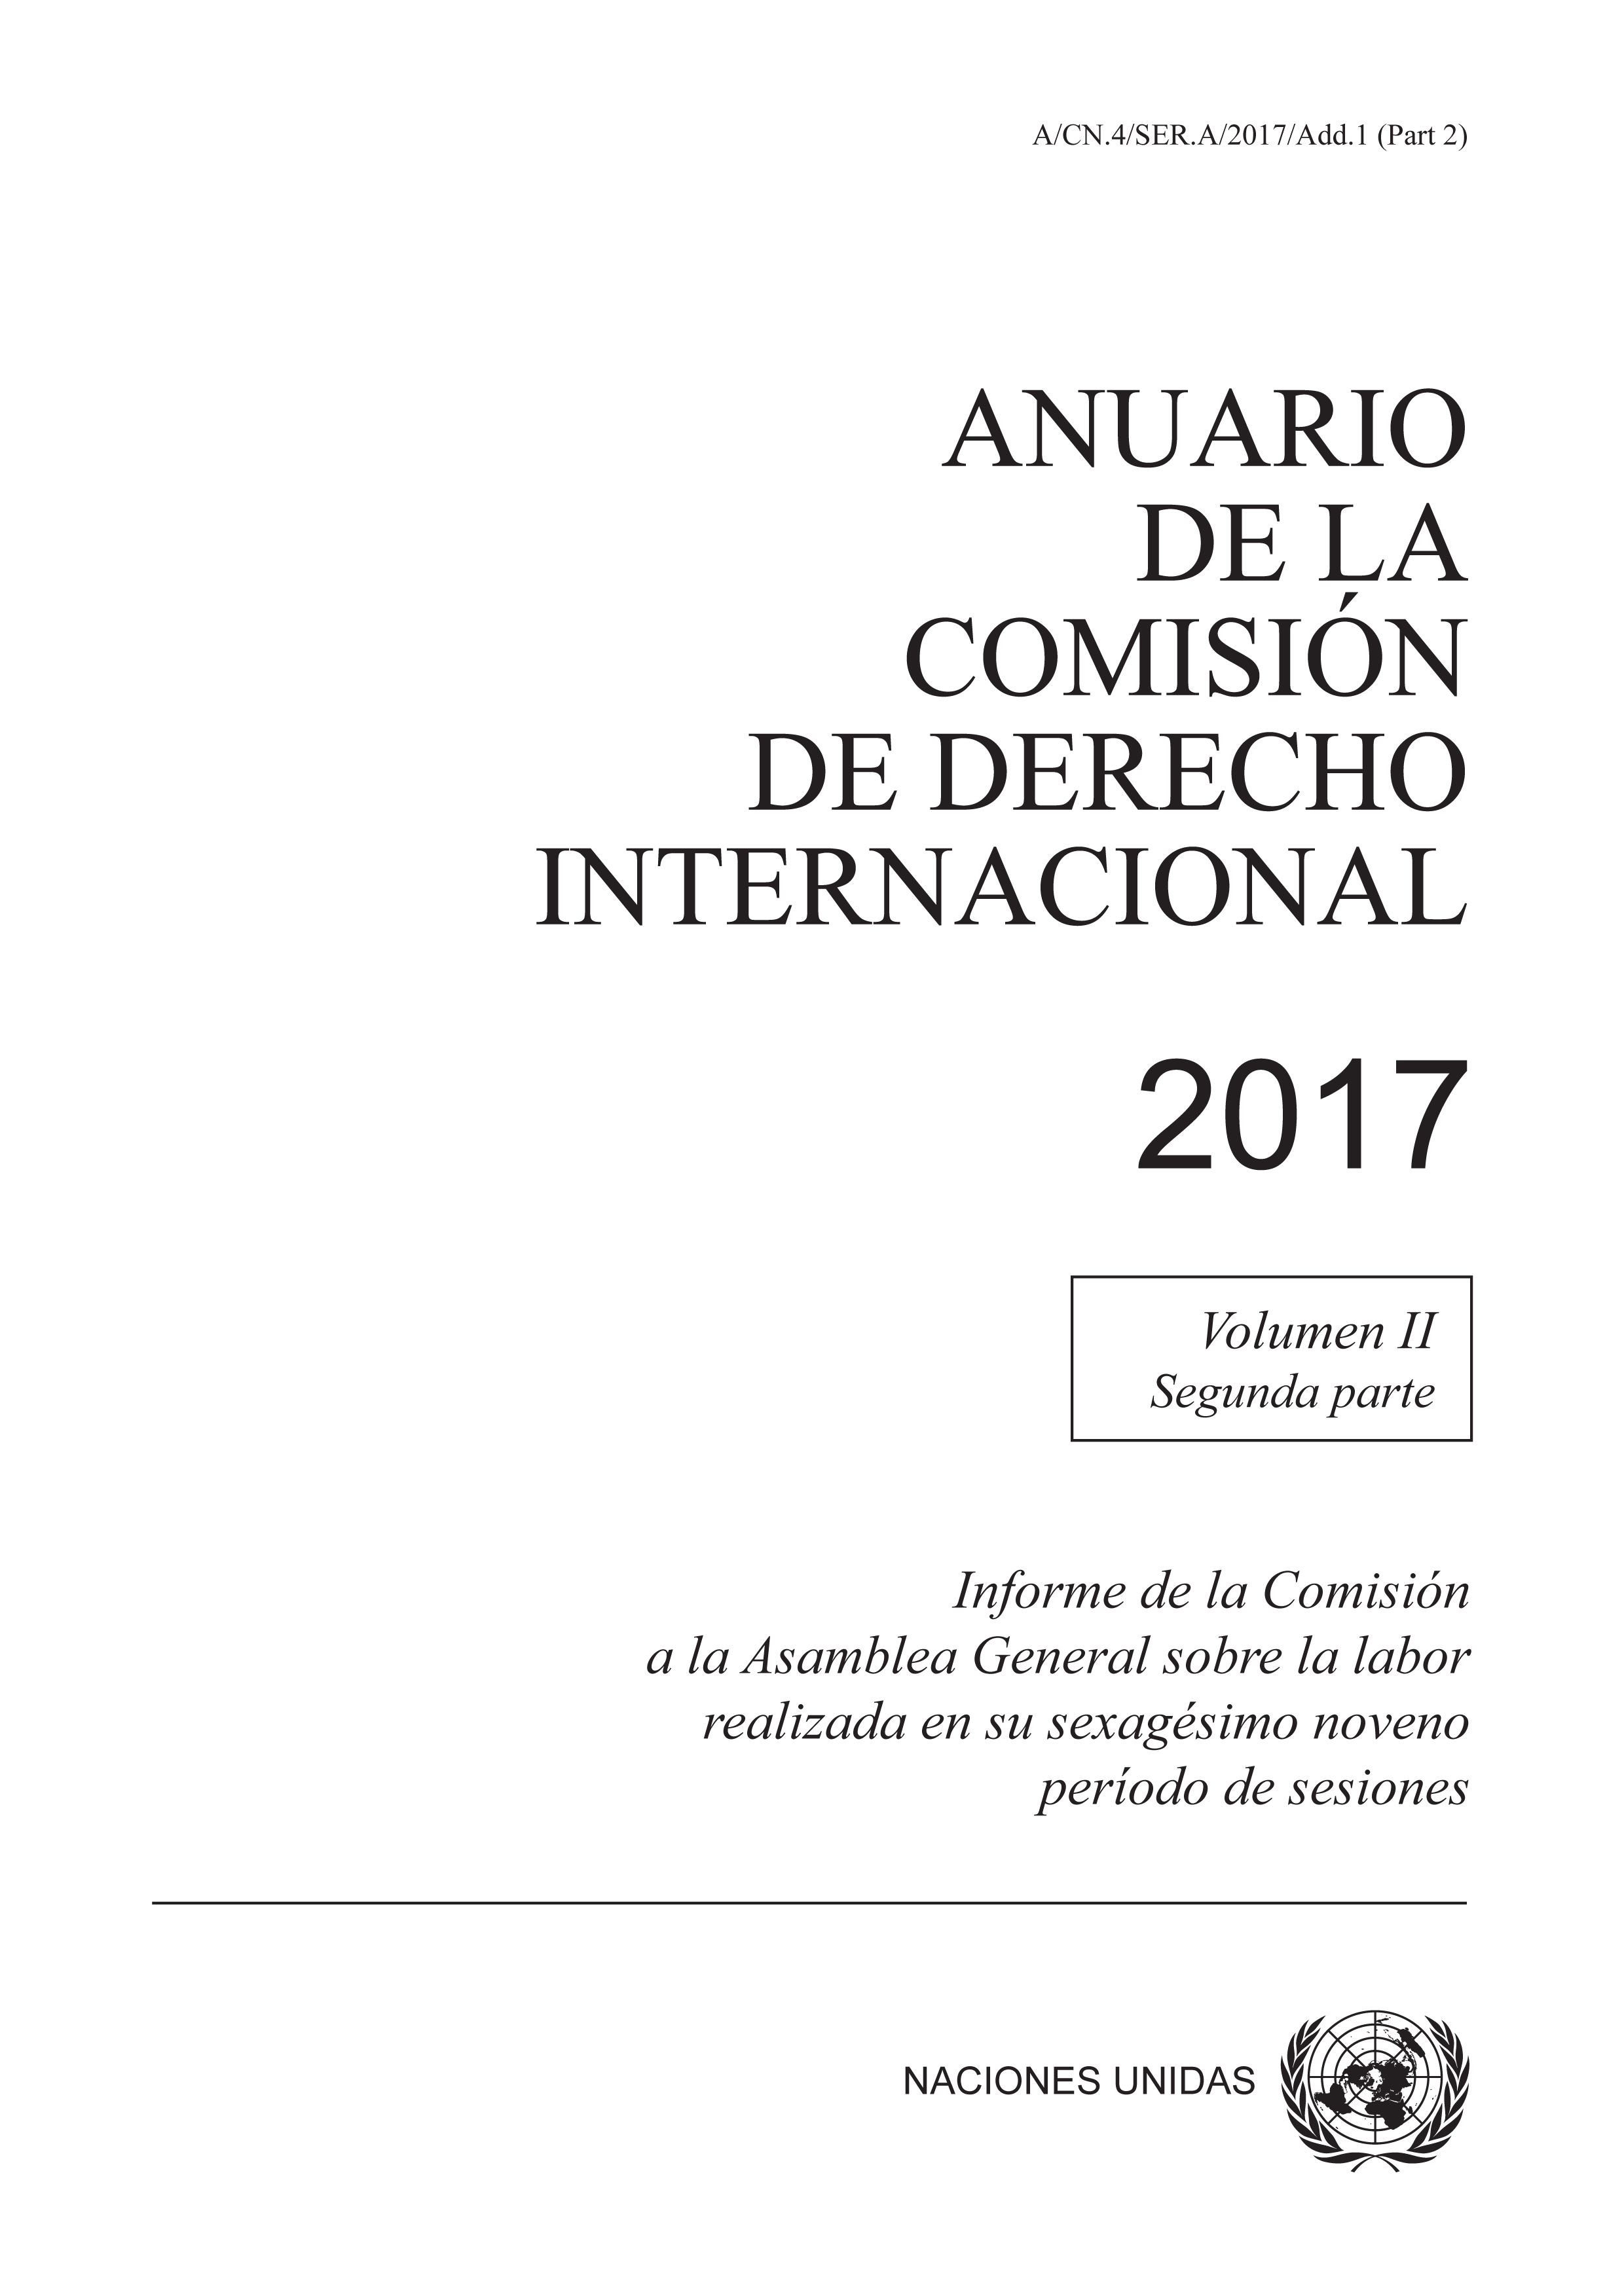 image of Anuario de la Comisión de Derecho Internacional 2017, Vol. II, Parte 2